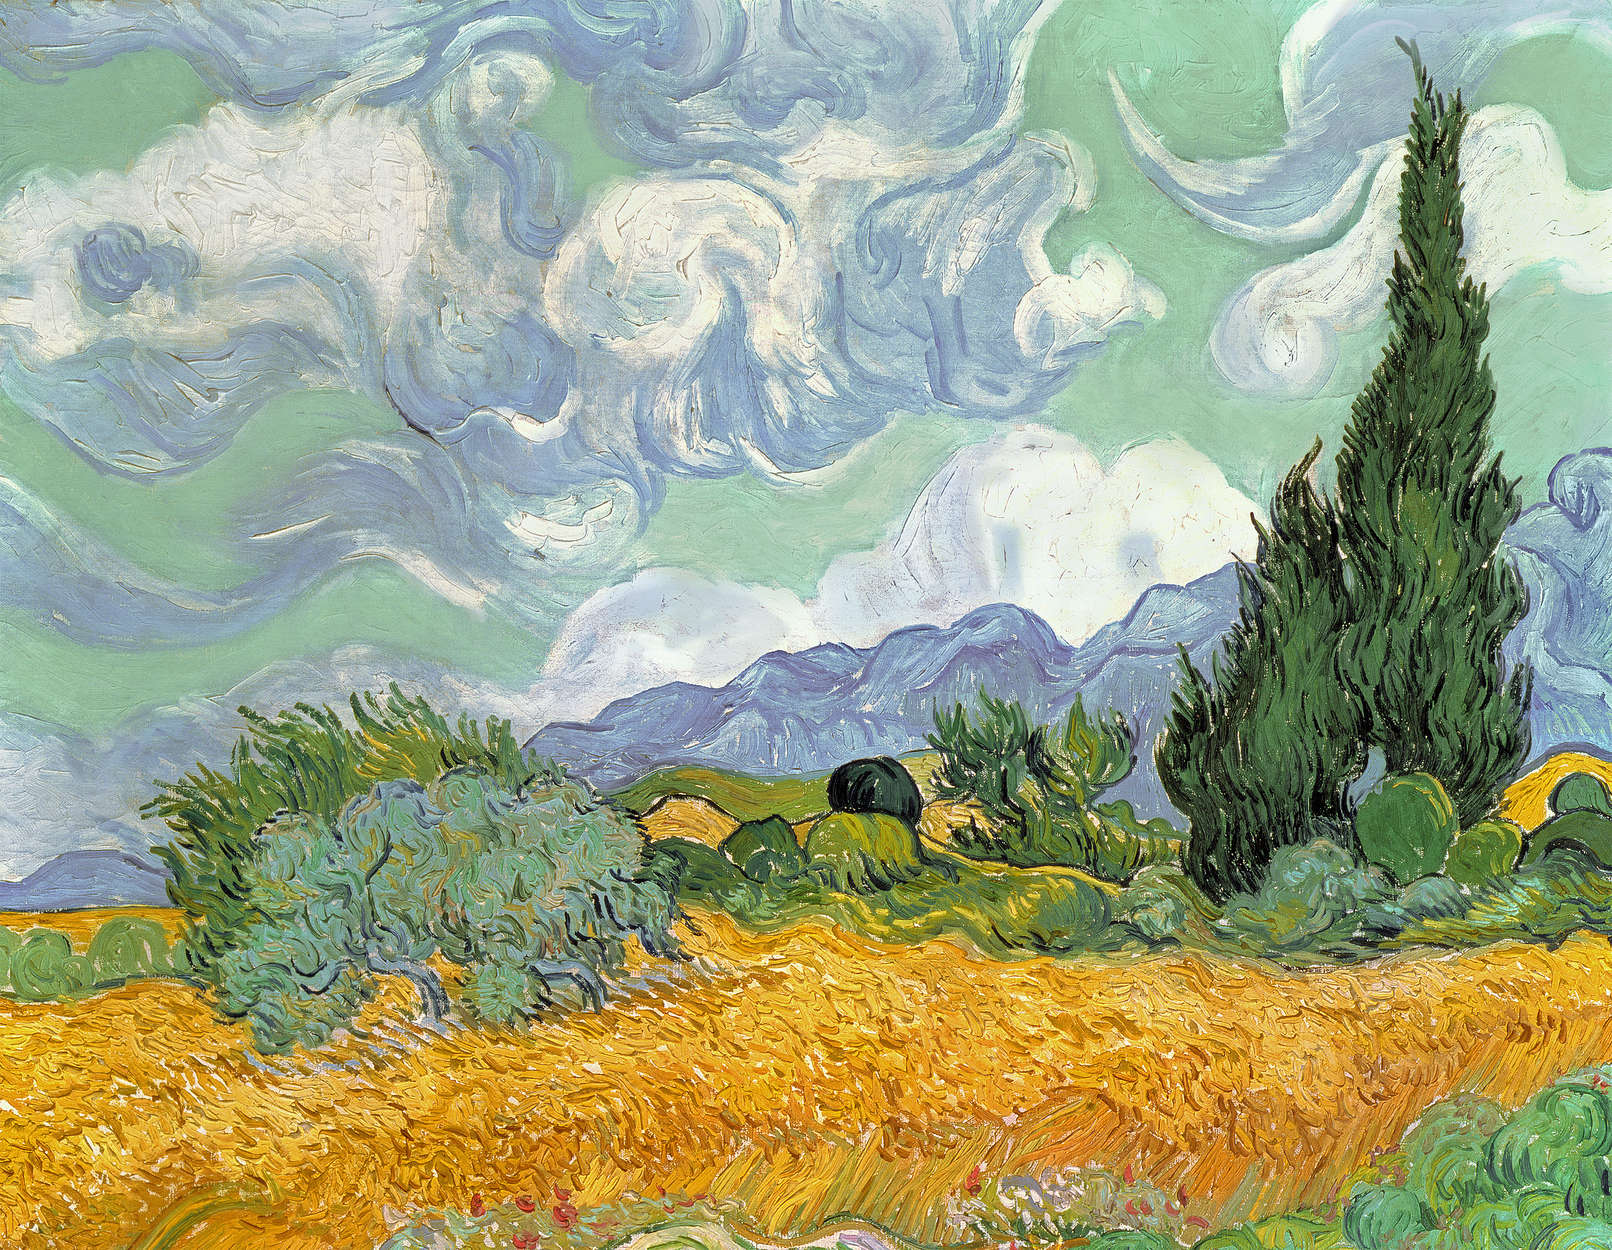             Papier peint "Champ de blé avec cyprès" de Vincent van Gogh
        